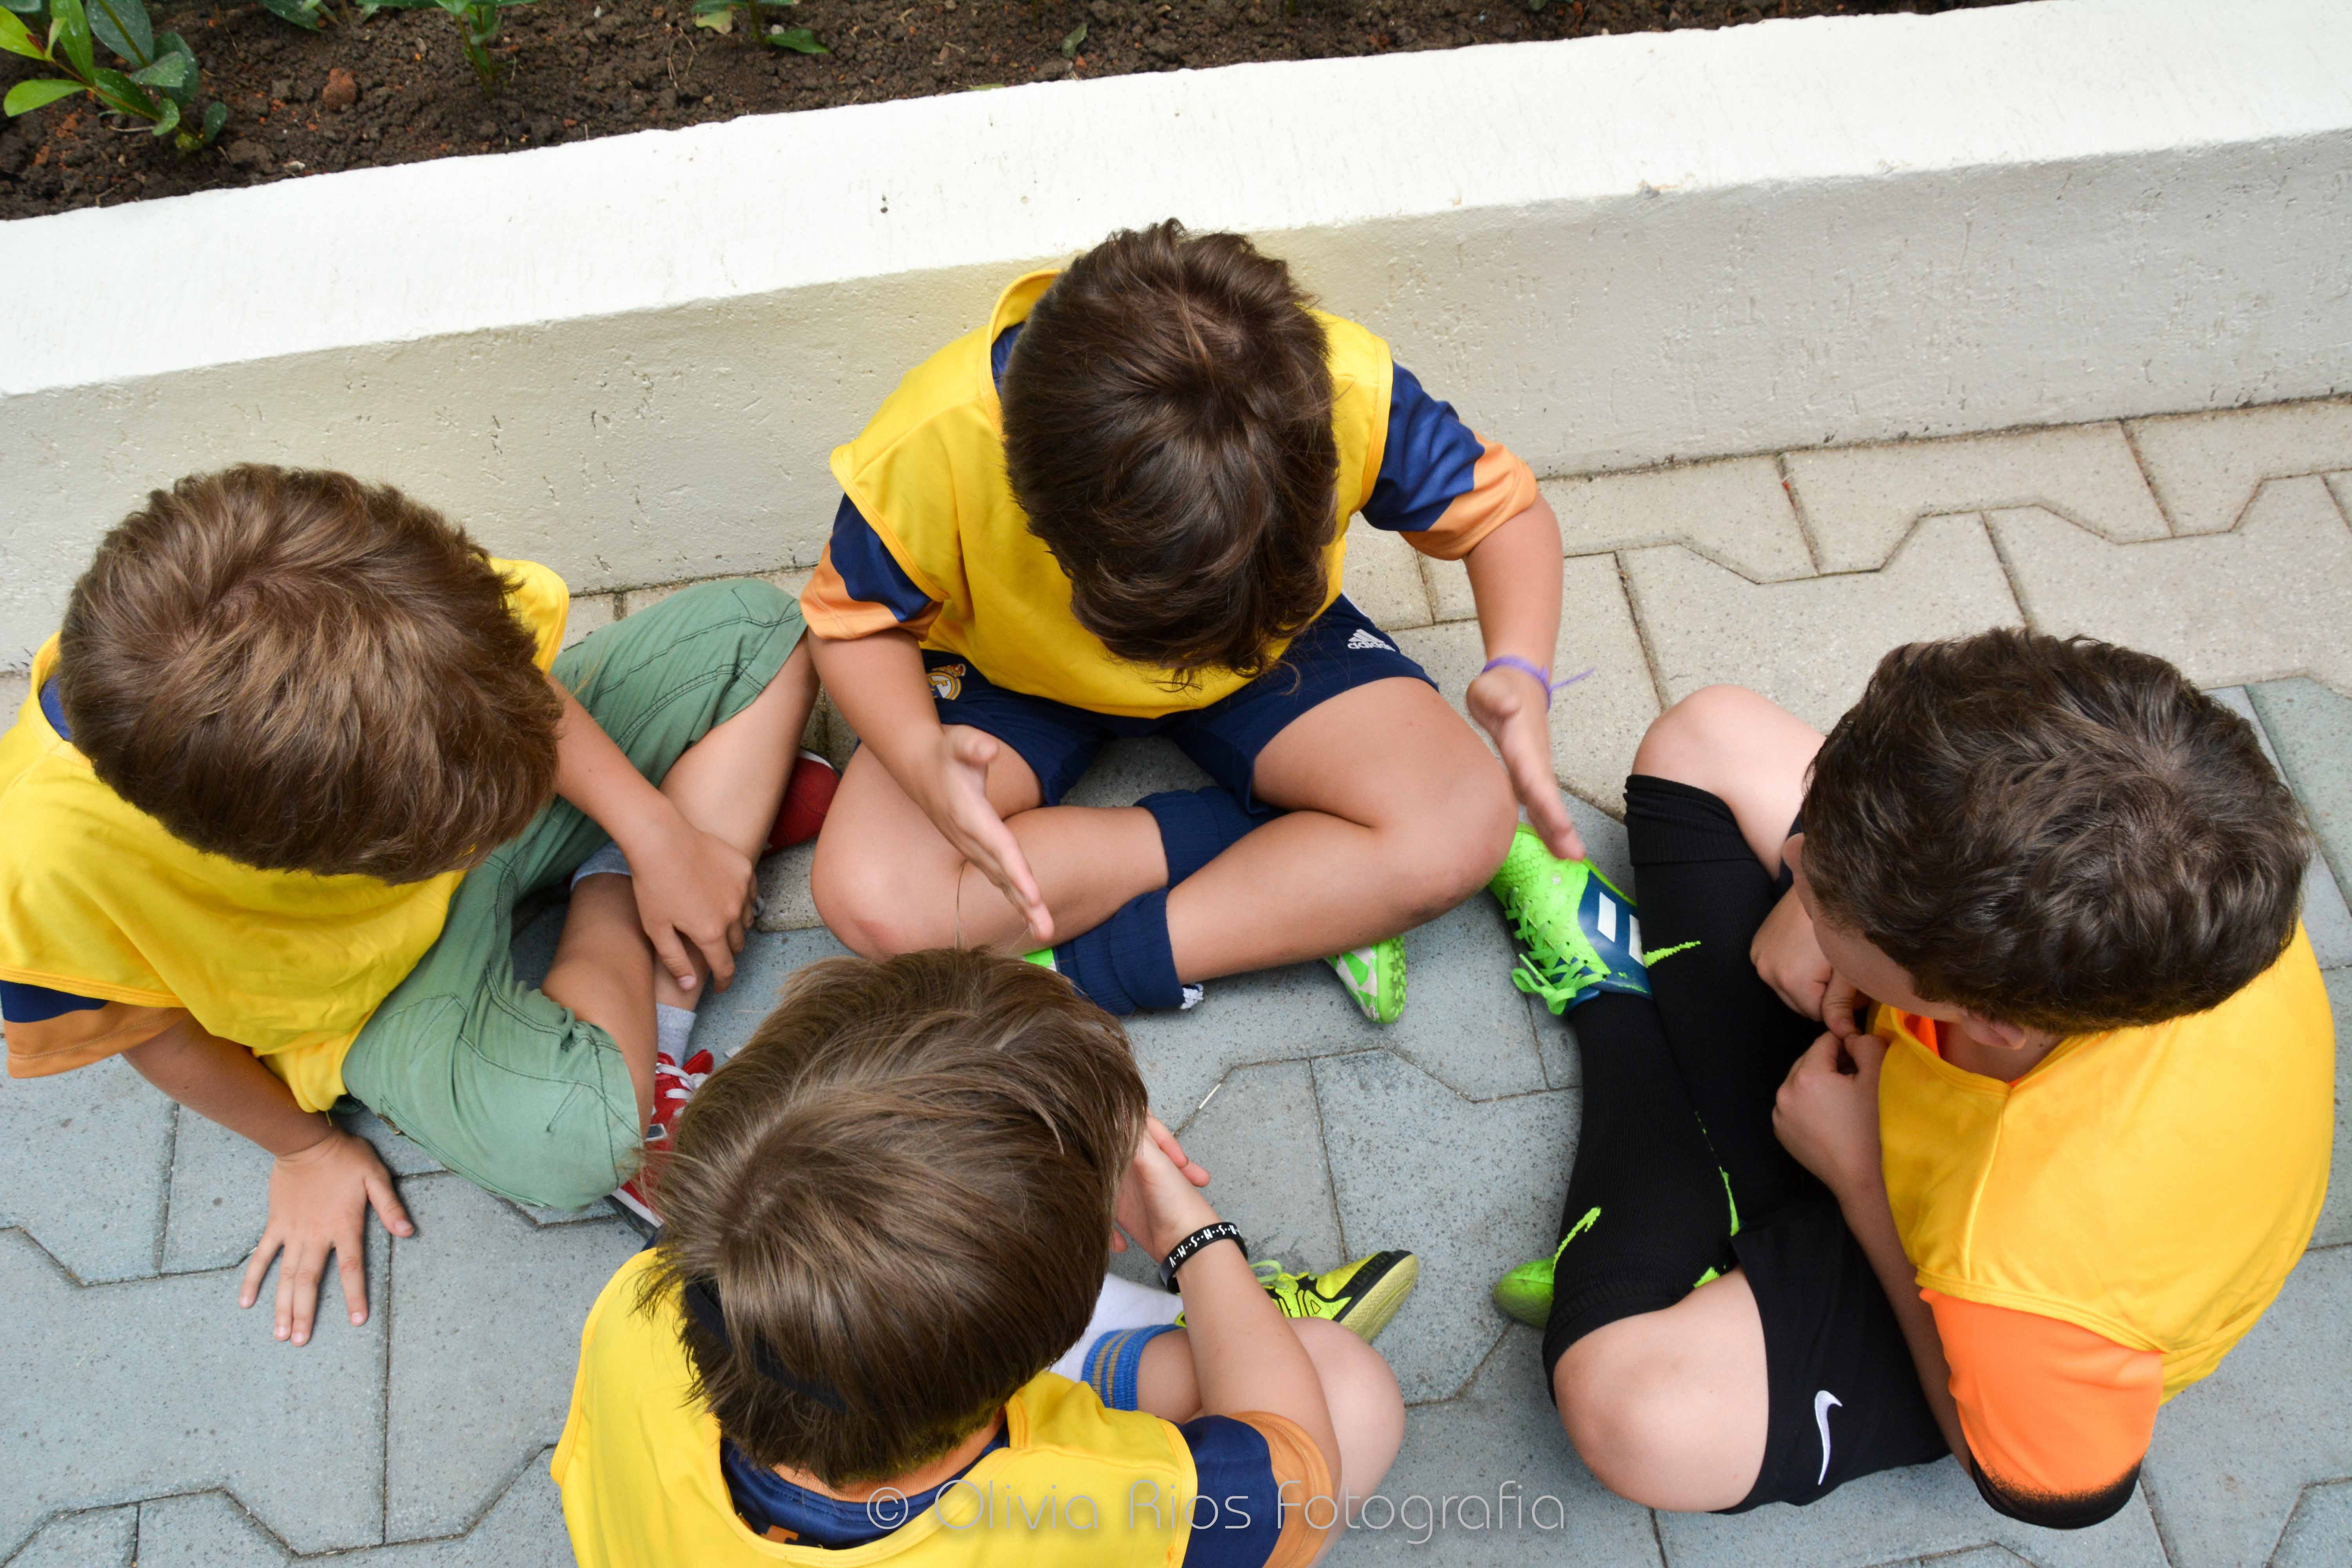 4 crianças sentadas no chão, usando camisetas cor amarela. eles usam chuteiras e diversas cores de shorts. Eles conversam entre si.